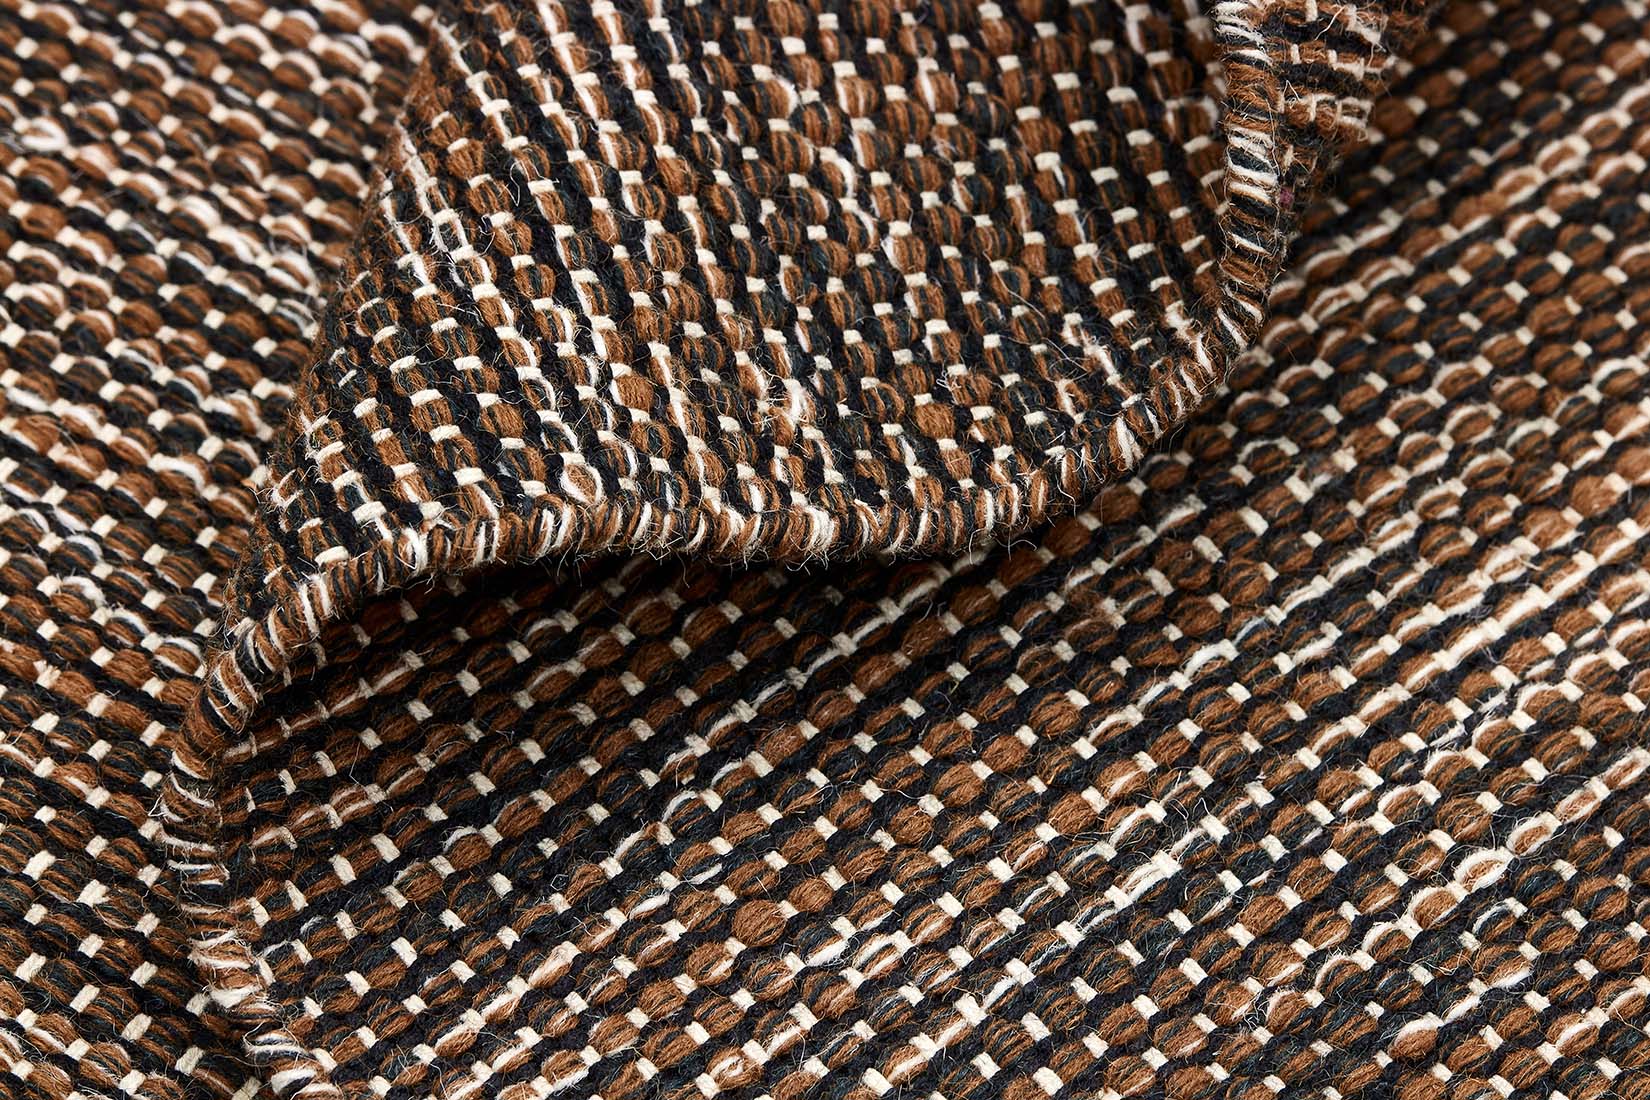 plain soft brown flatweave wool rug
